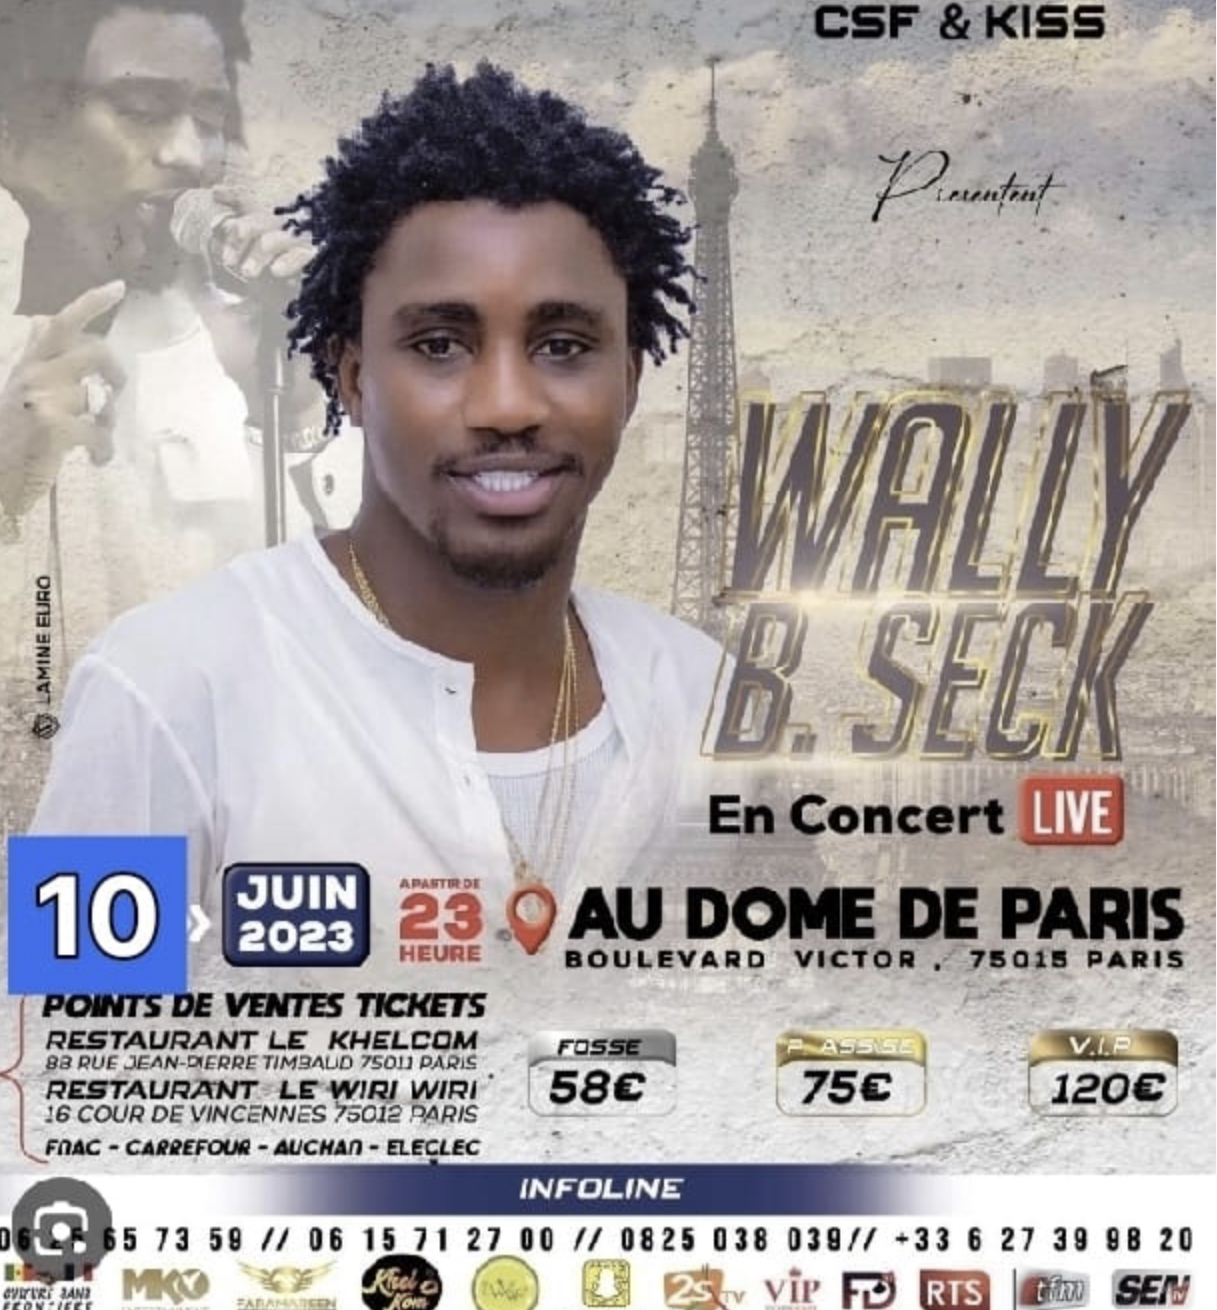 URGENT: Le concert du 03 juin de Waly Seck est reporté au samedi 10 juin au Dôme de Paris